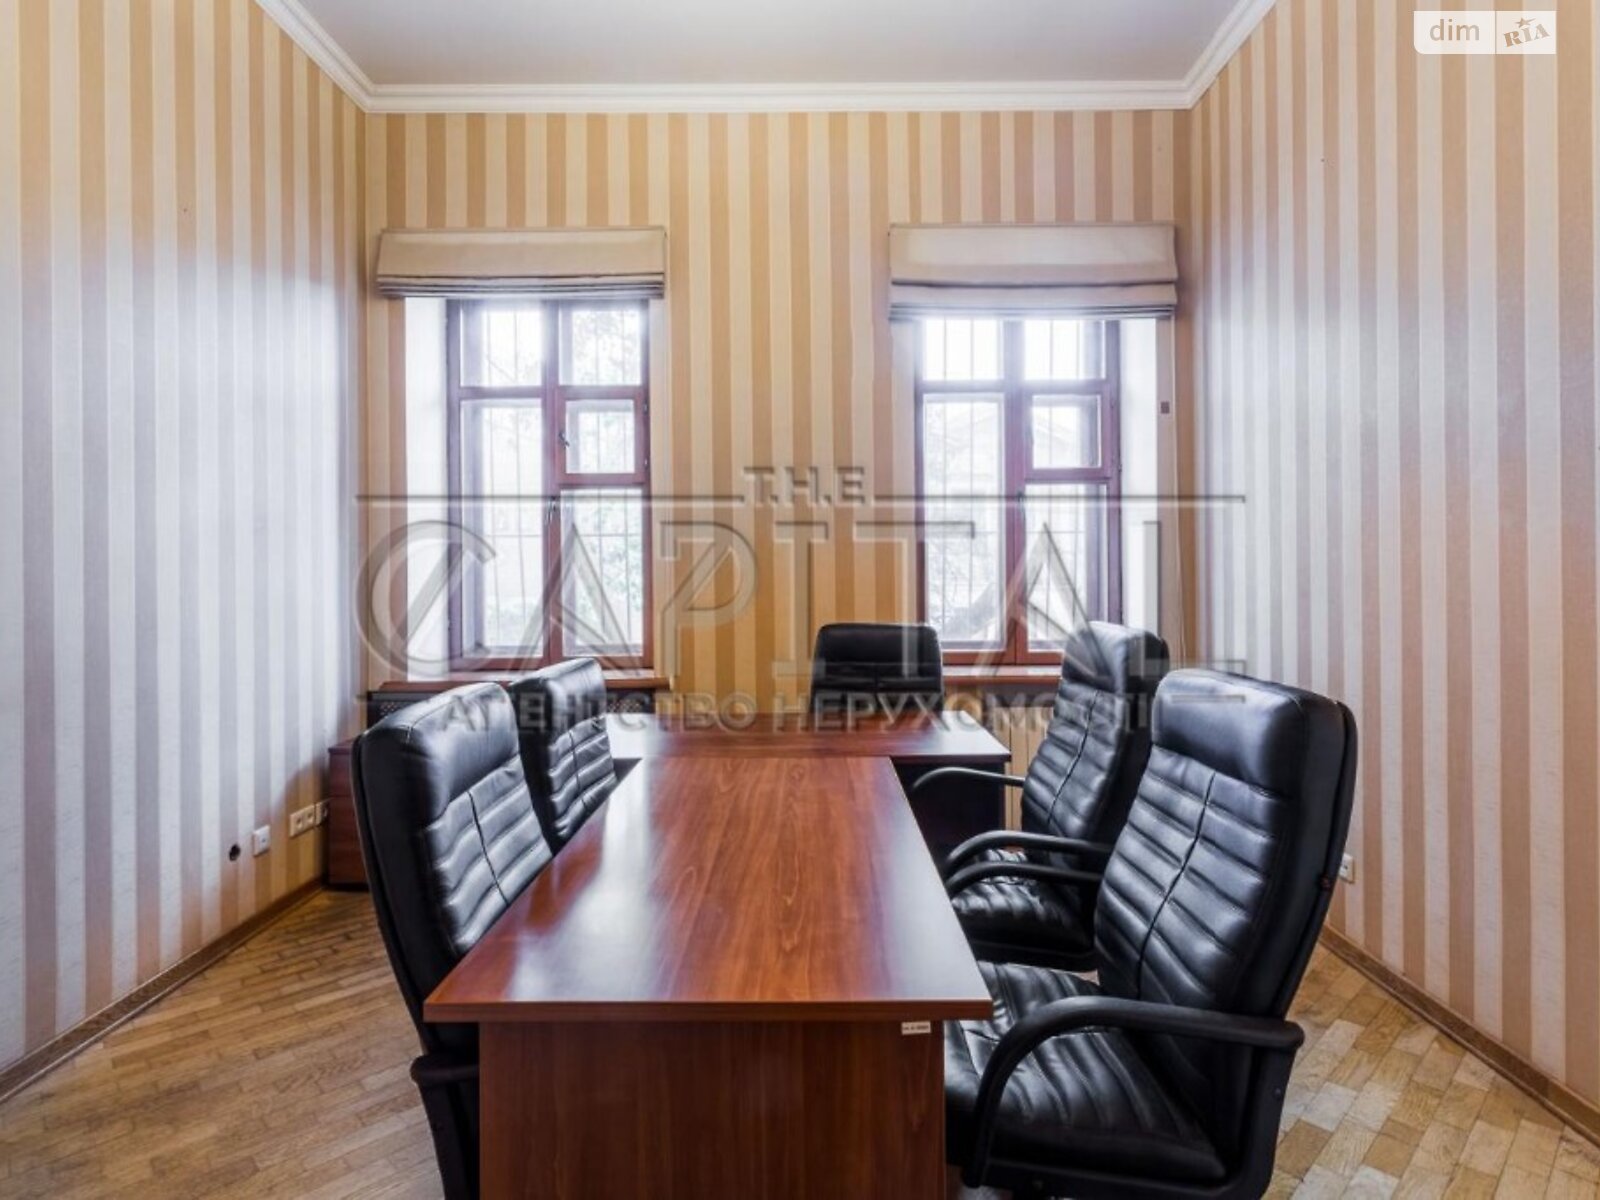 Аренда офисного помещения в Киеве, Вознесенский узвоз 18, помещений - 6, этаж - 1 фото 1